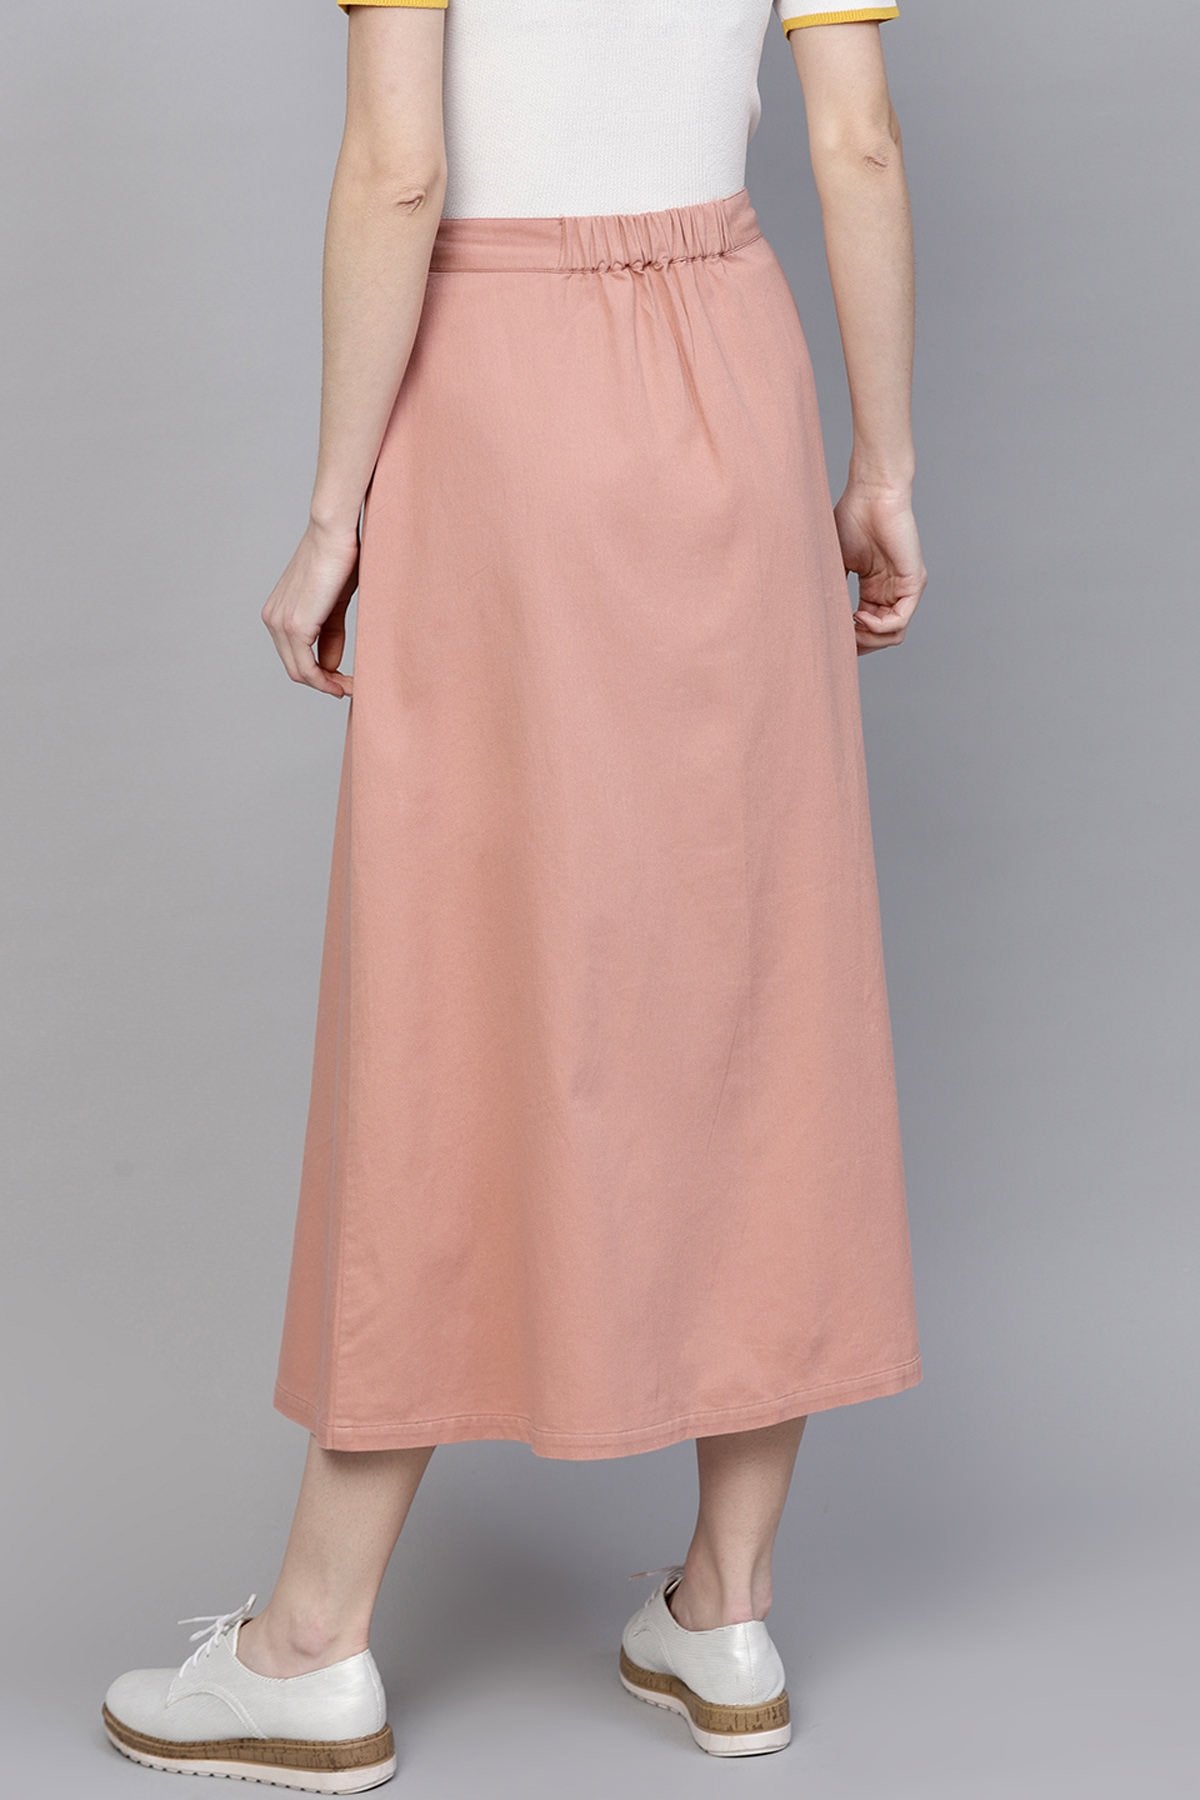 Women's Pink Denim Longline Buttoned Skirt - SASSAFRAS